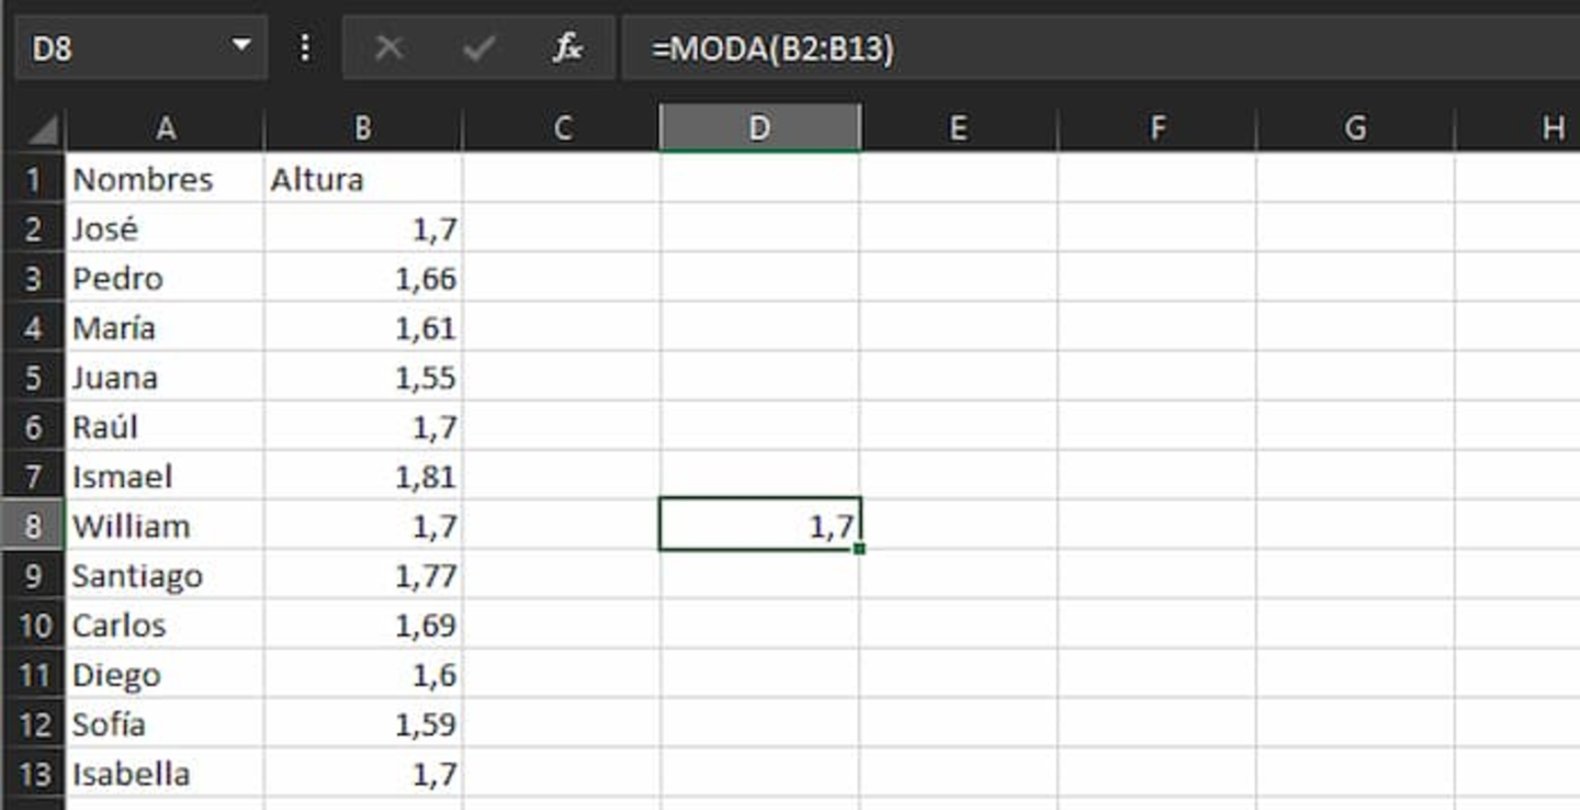 Con la fórmula de la moda podrás determinar el valor que más se repite en una secuencia de datos